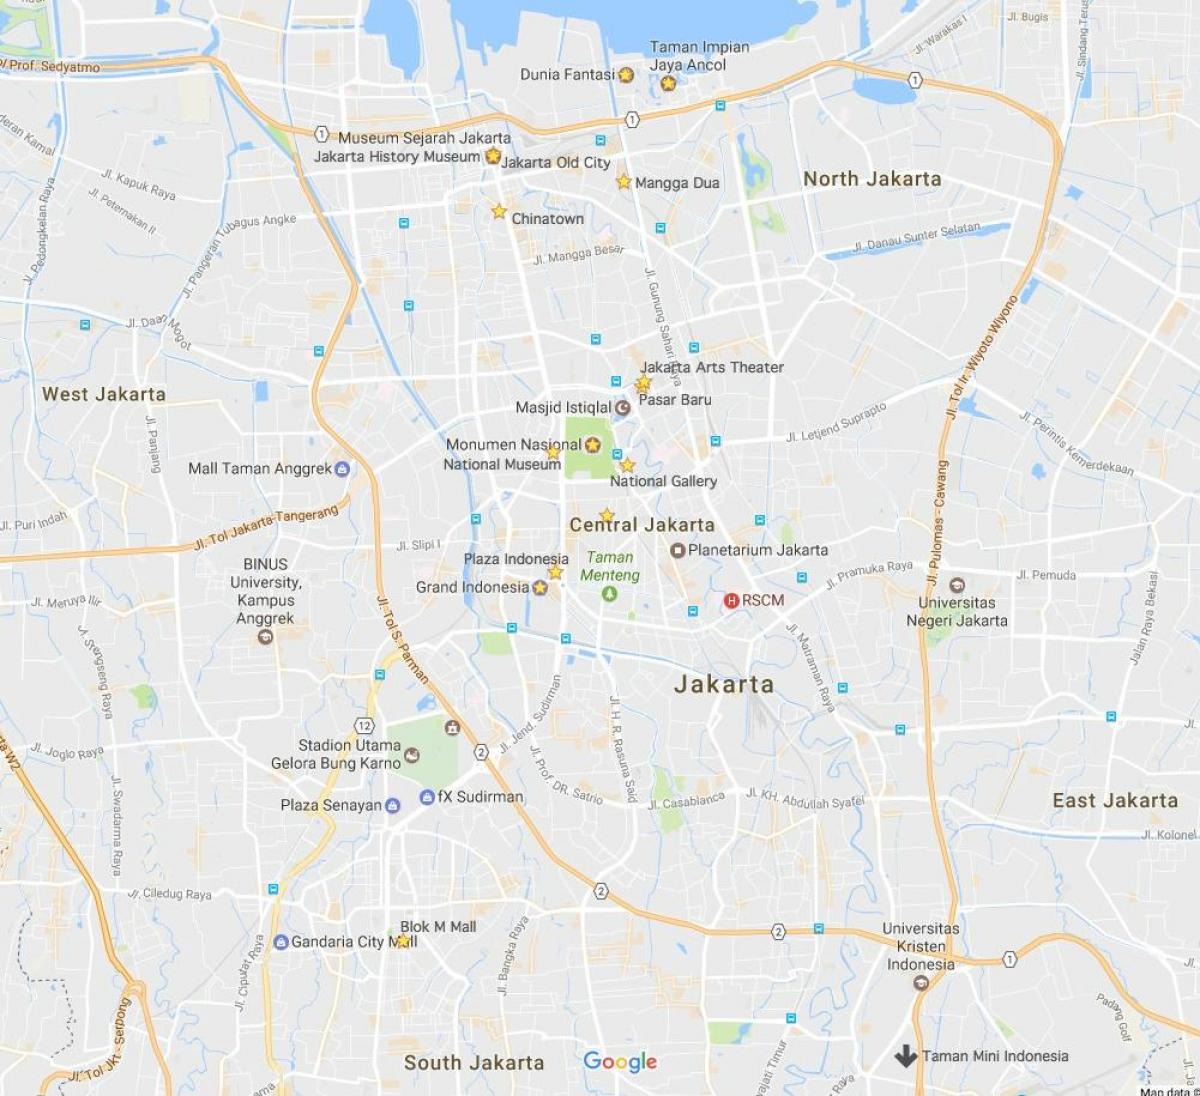 mapa de la val de Jakarta